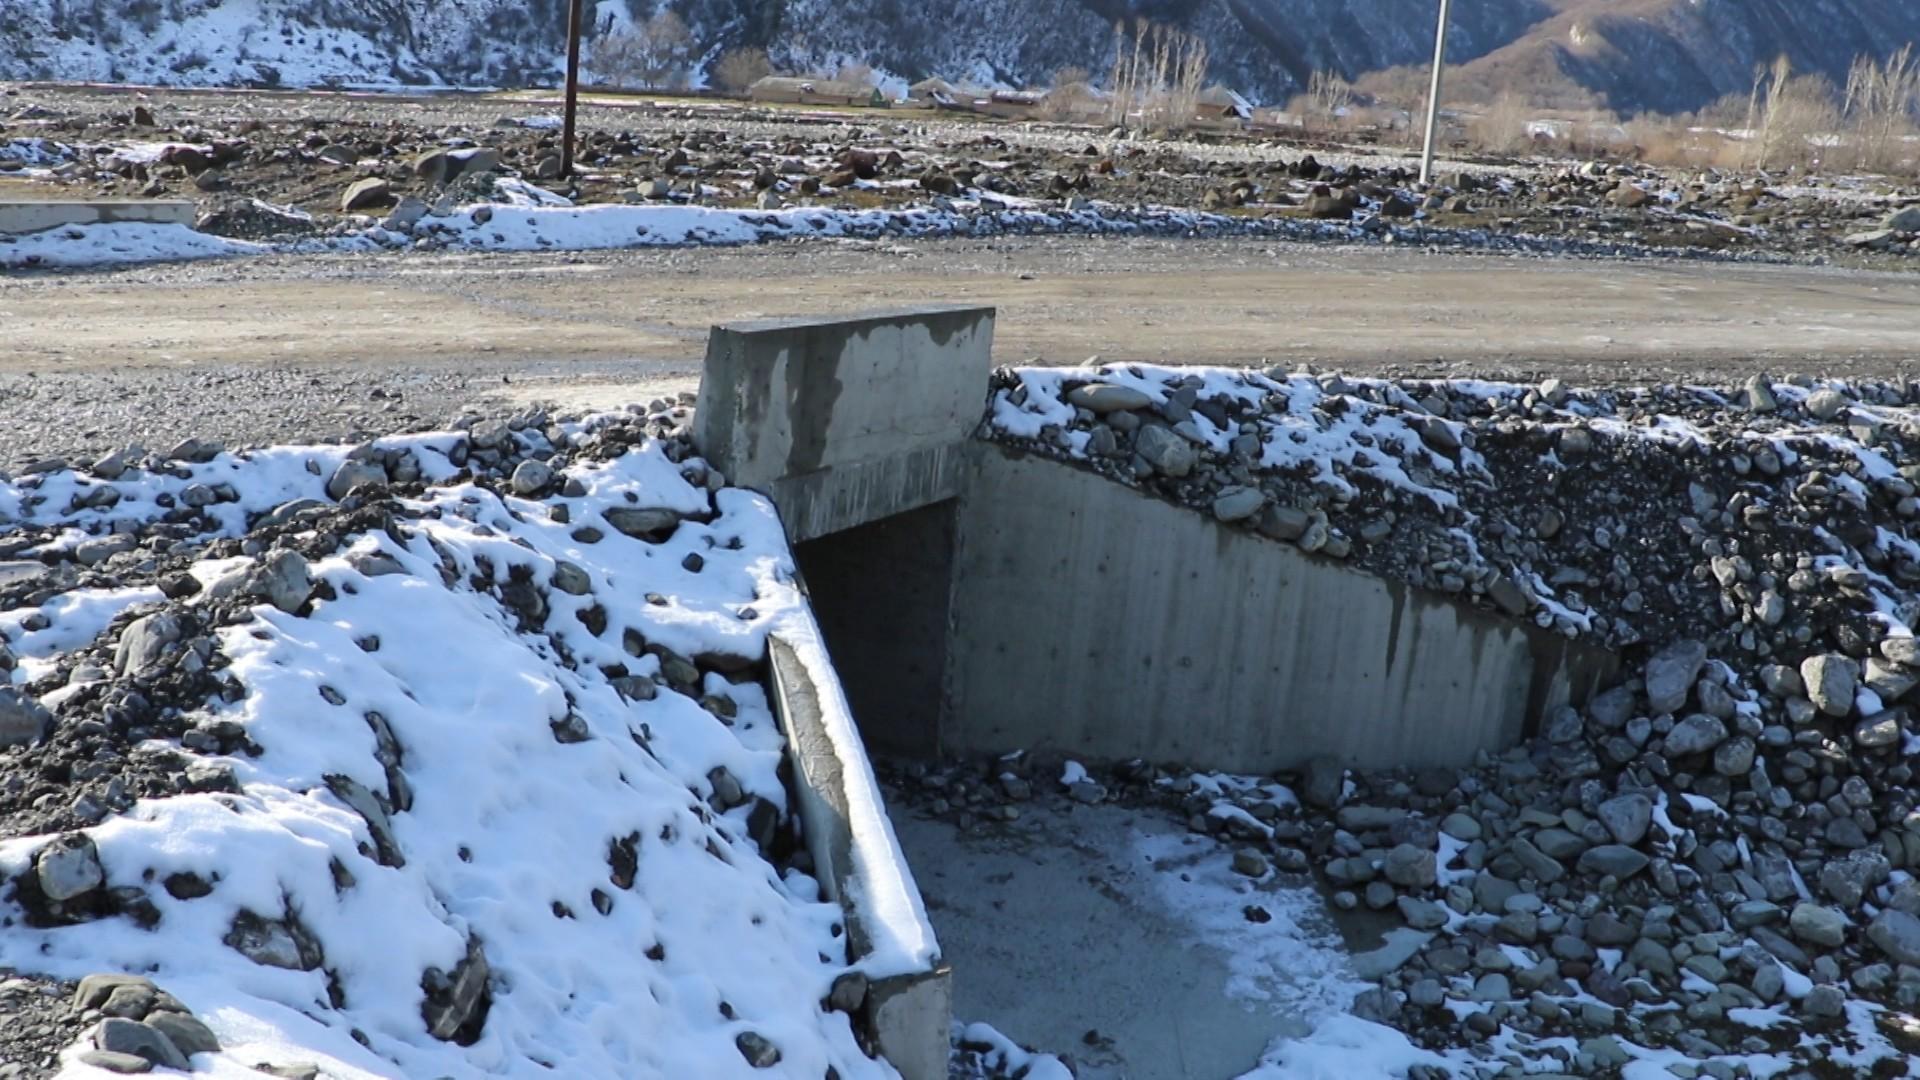 Oğuzda Bucaq-Muxas-Baş Daşağıl yolu yenidən qurulur (FOTO/VİDEO)